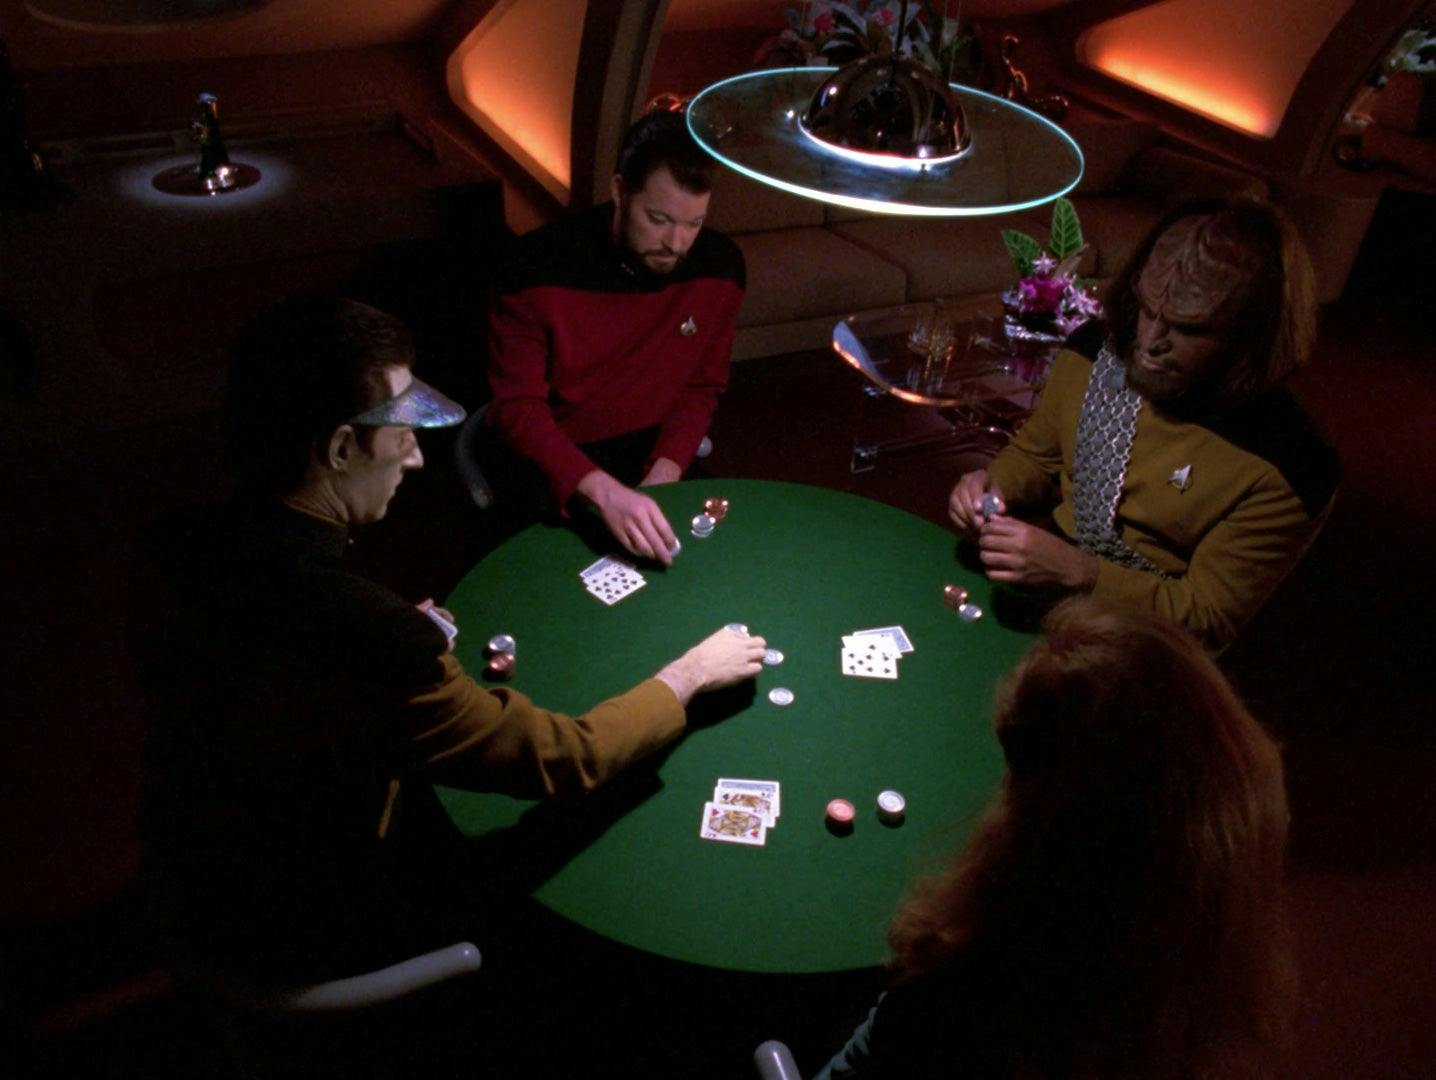 Data, Riker, Worf, and Crusher play poker.